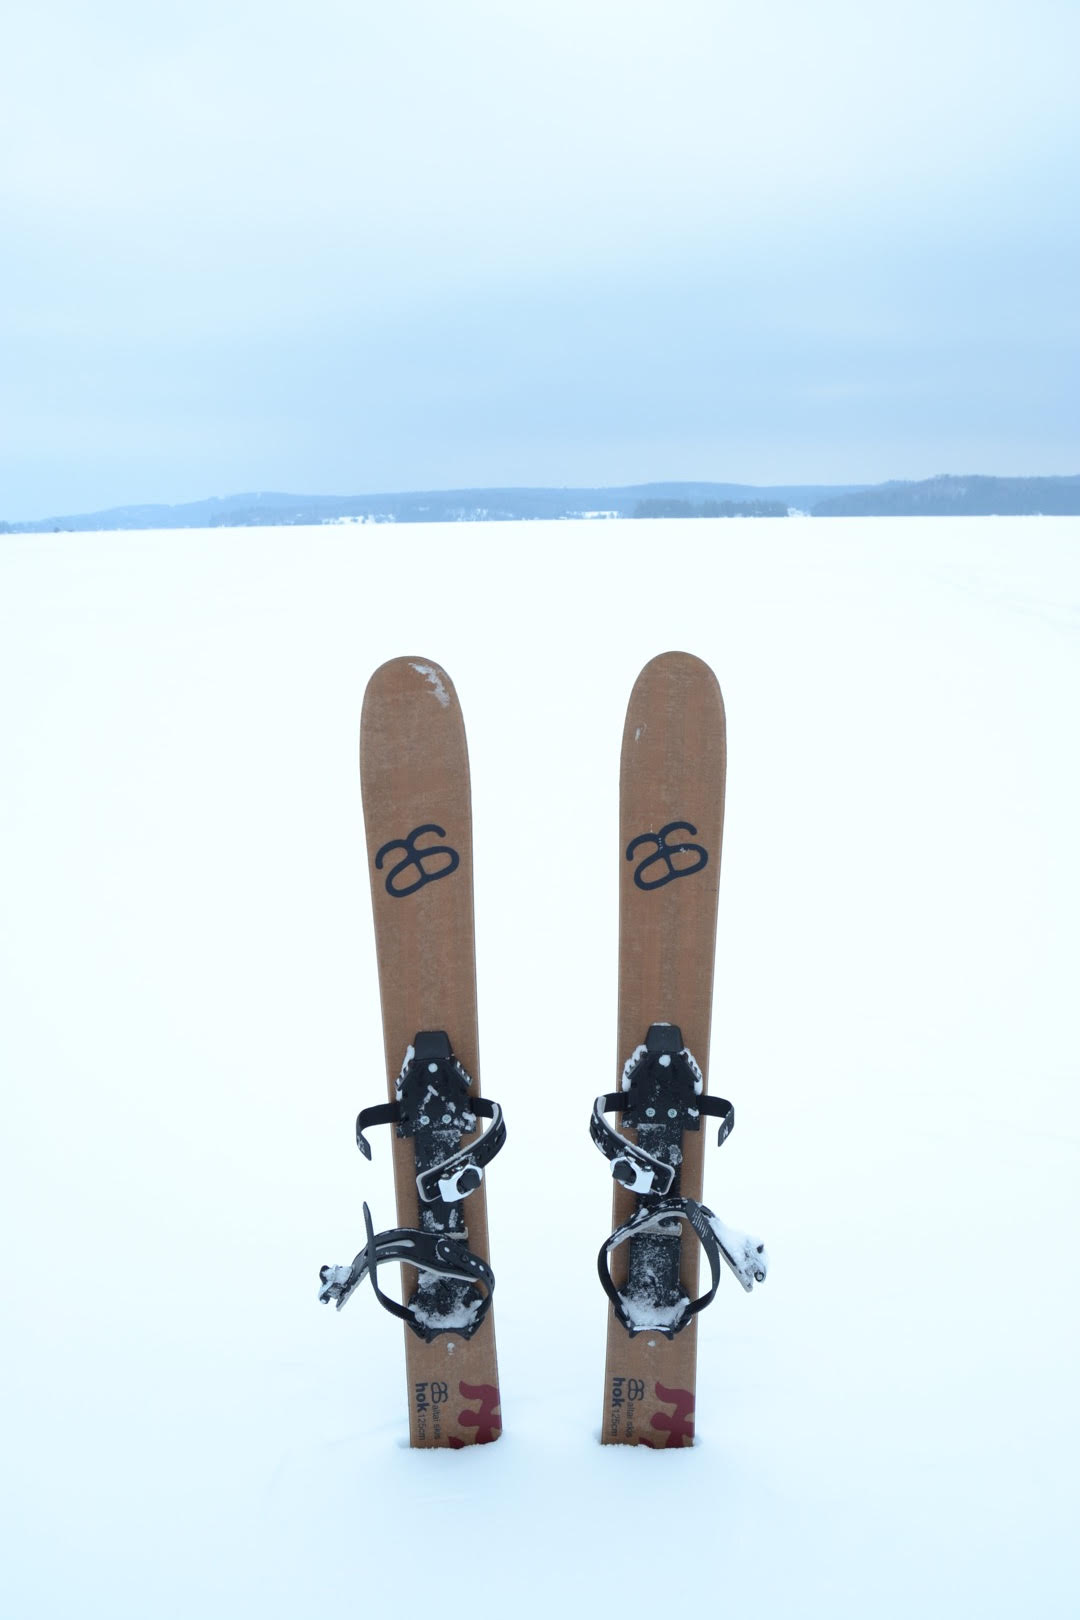 Buy > nordic ski equipment near me > in stock